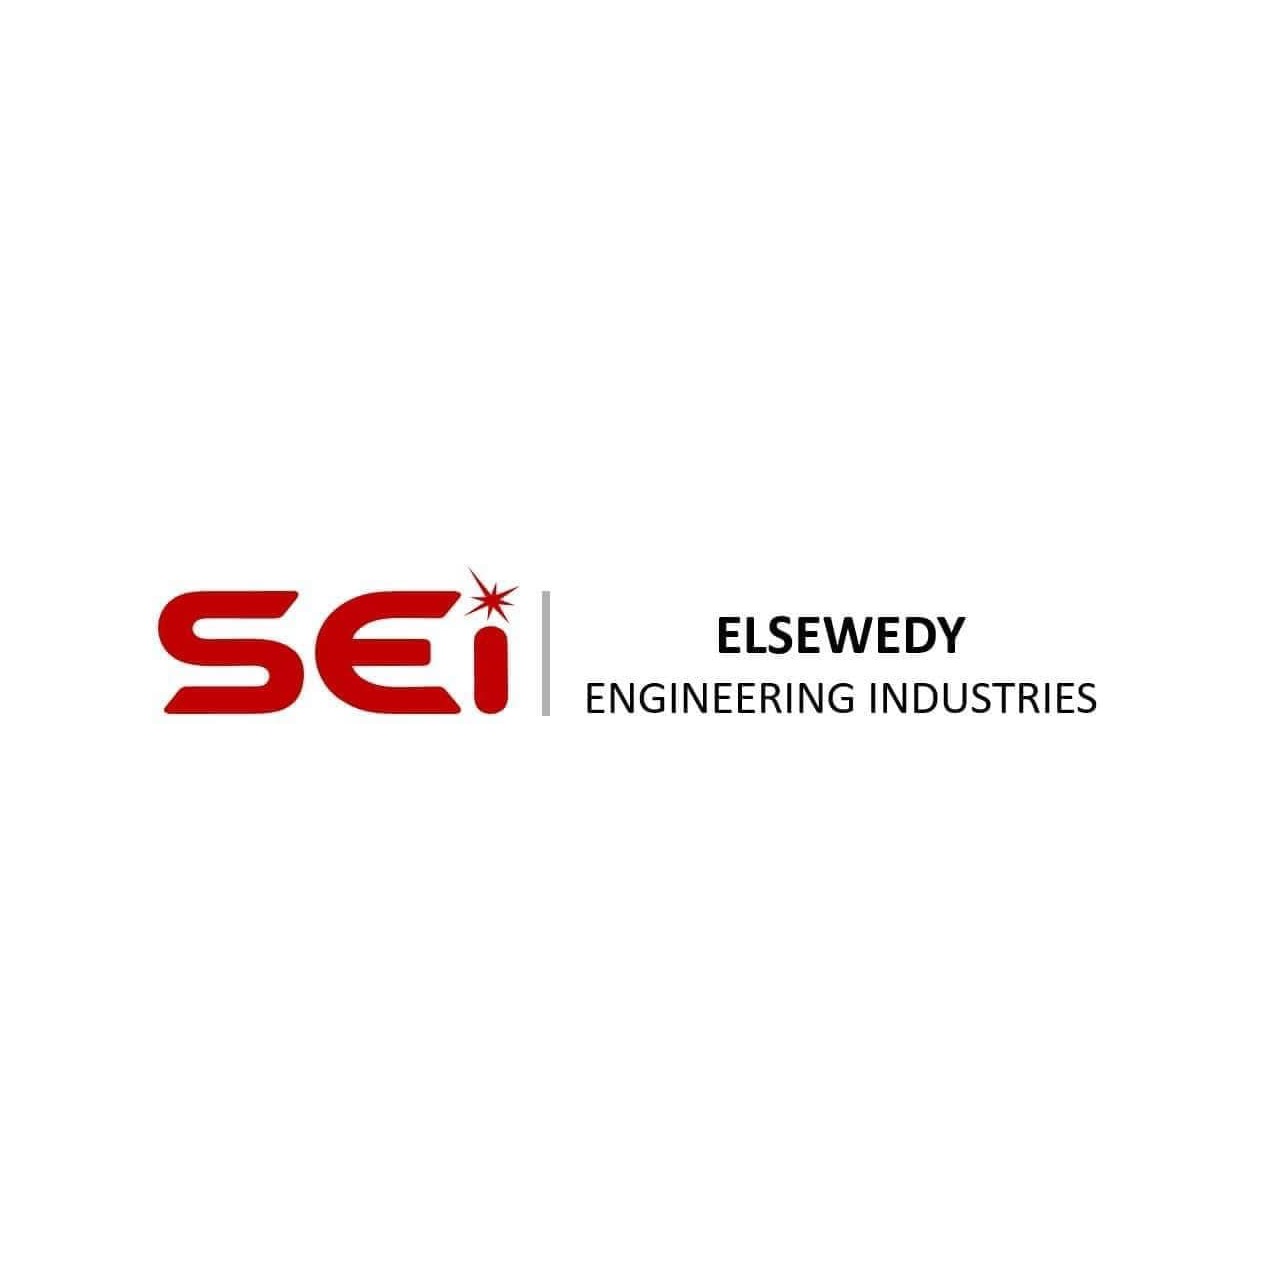 ElSewedy Engineering Industreis